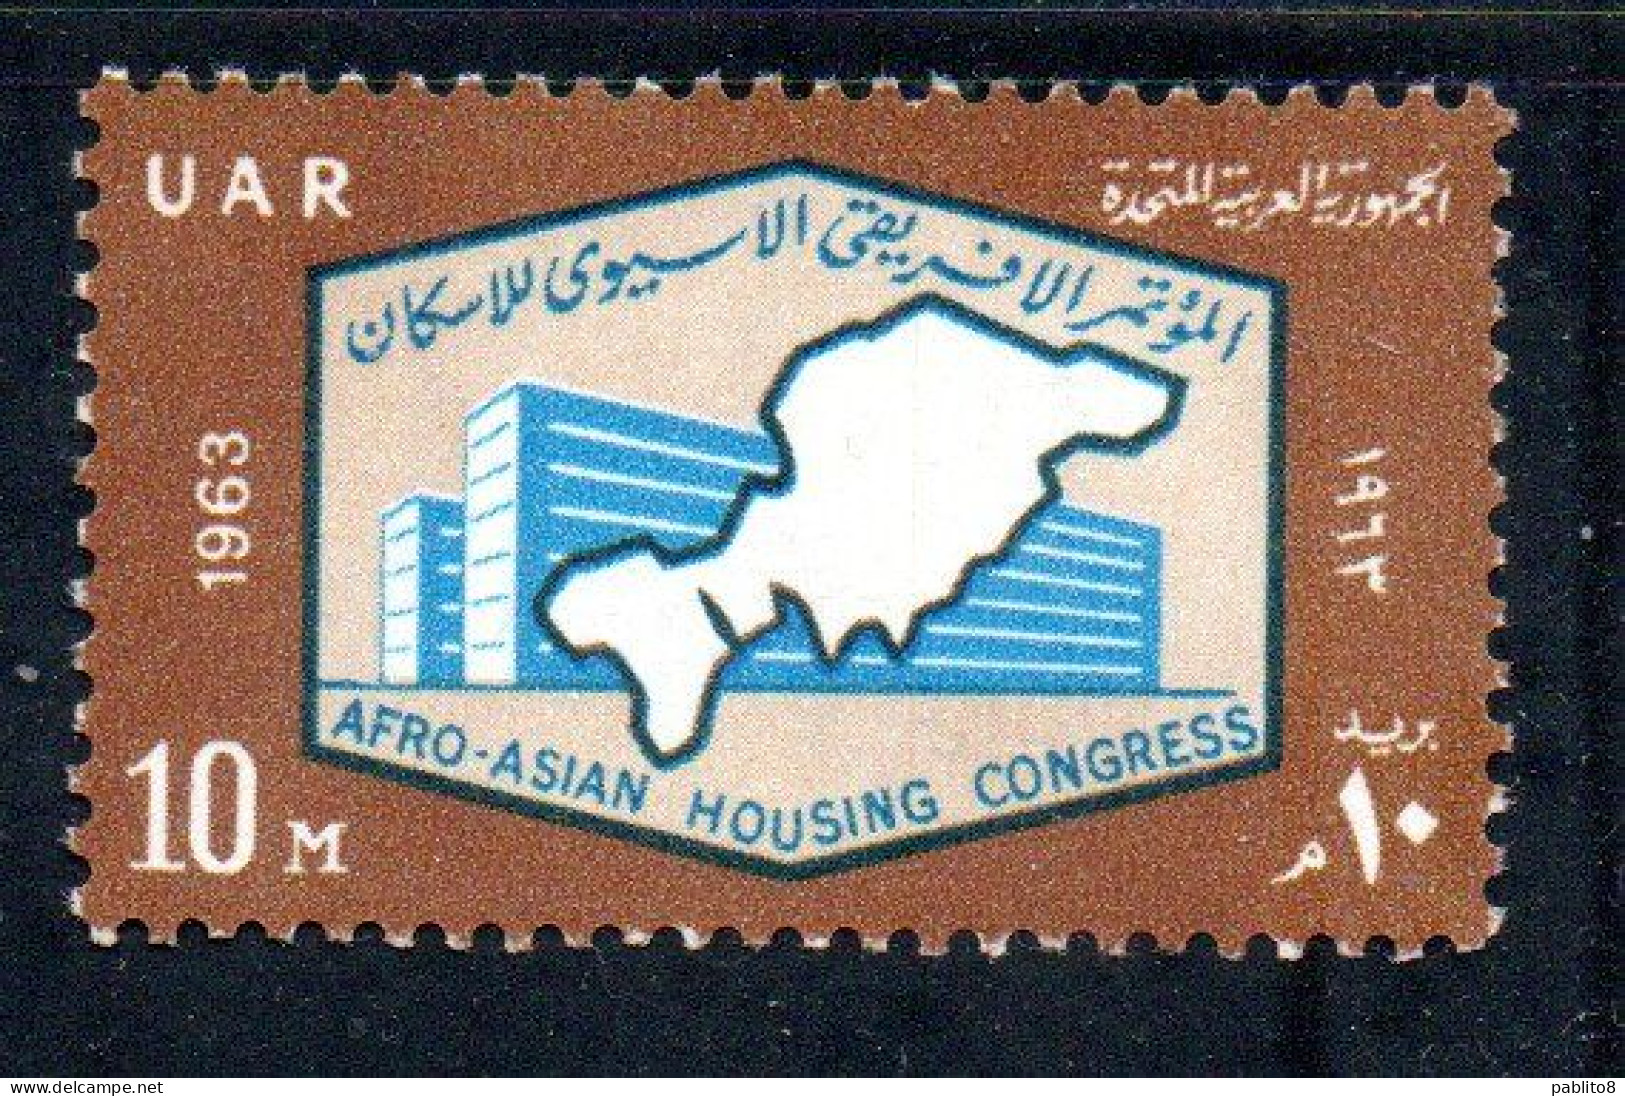 UAR EGYPT EGITTO 1963 AFRO-ASIAN HOUSING CONGRESS MODERN BUILDING AND MAP 10m MNH - Neufs